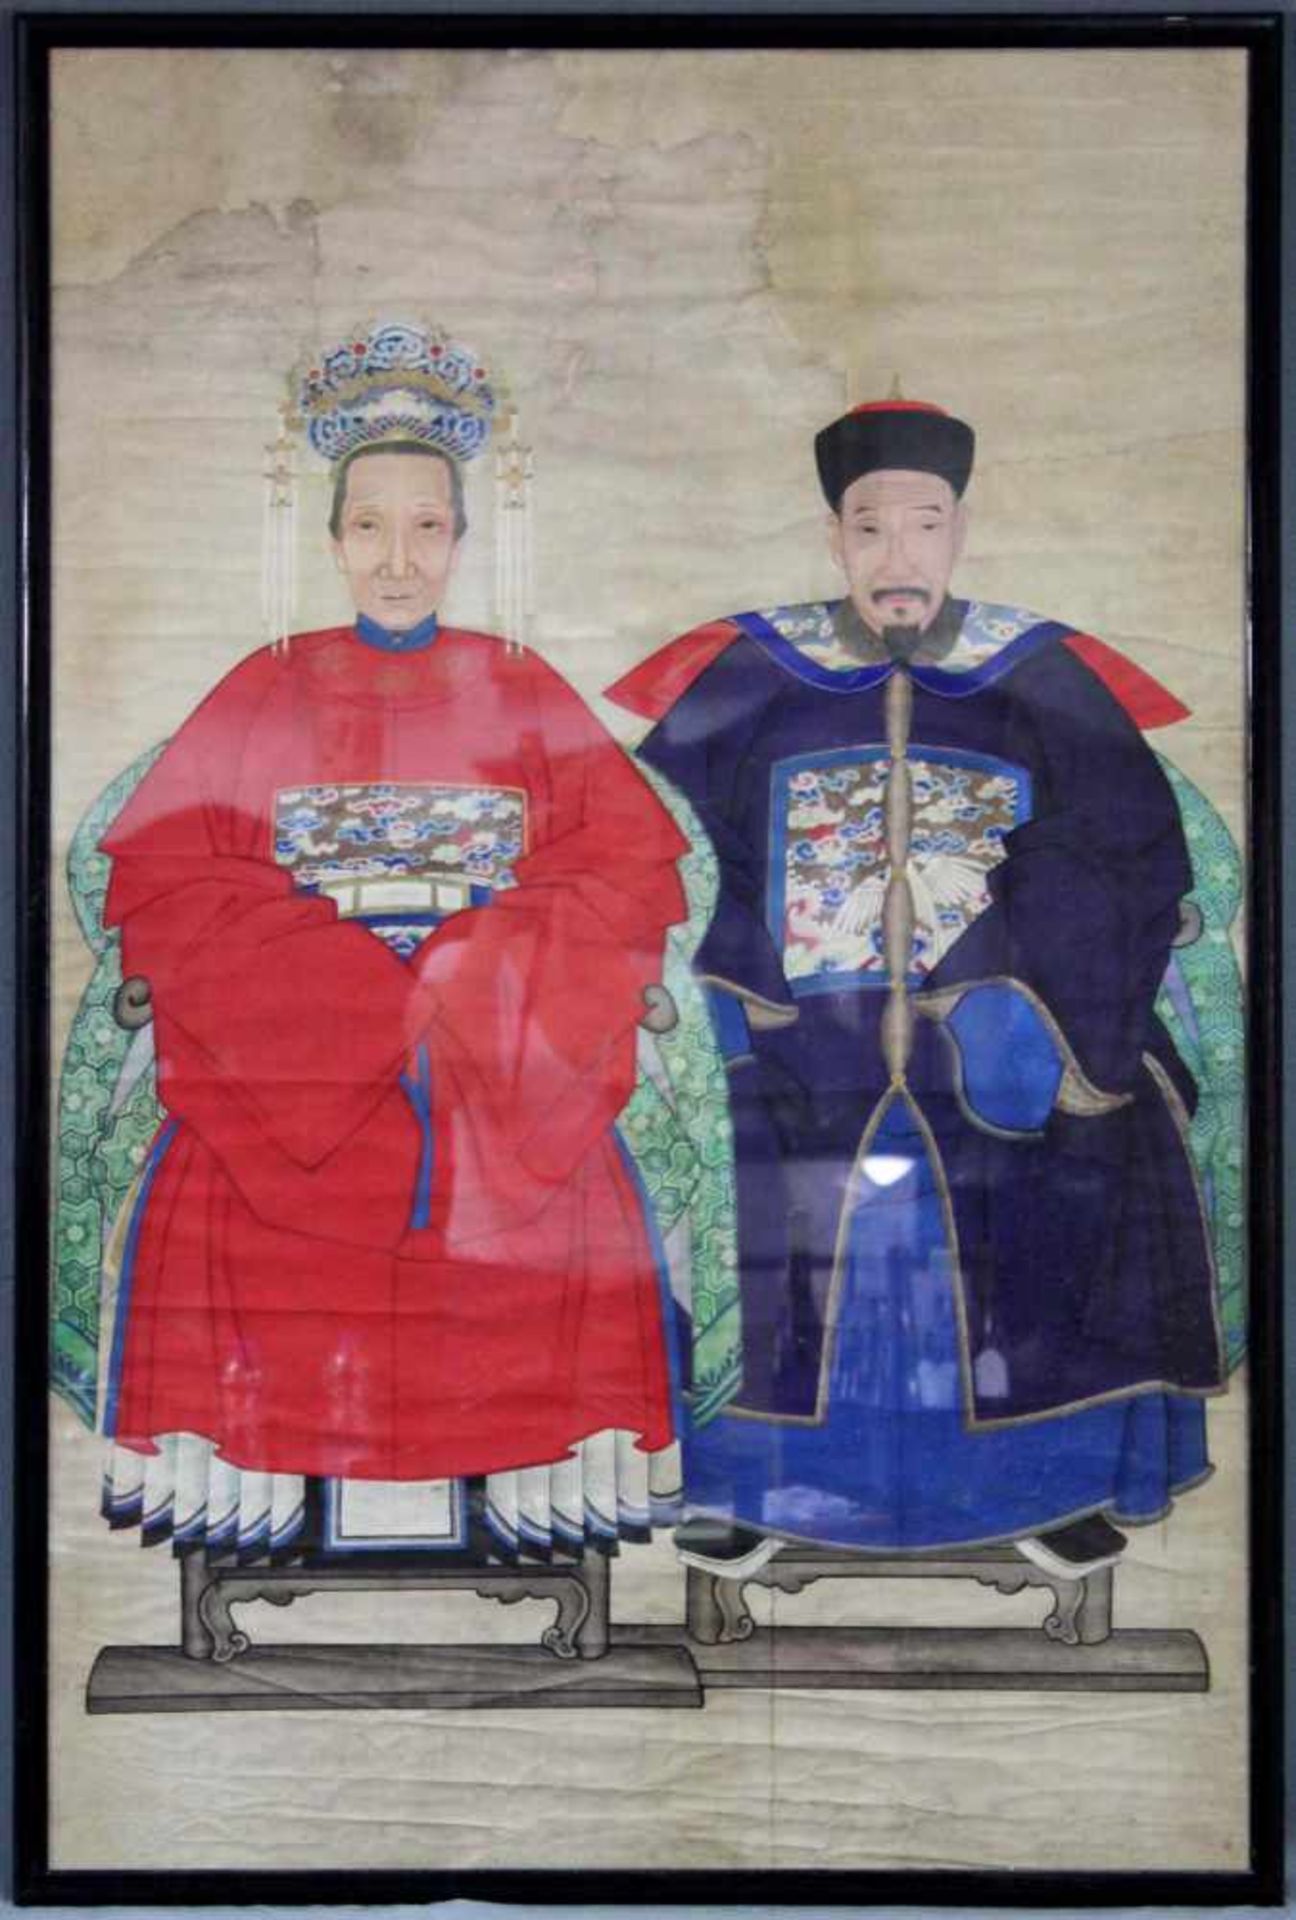 Ahnenbild. Ein Beamter und eine Frau. China.120 cm x 80 cm. Aquarell / Guache auf Papier, gemalt.